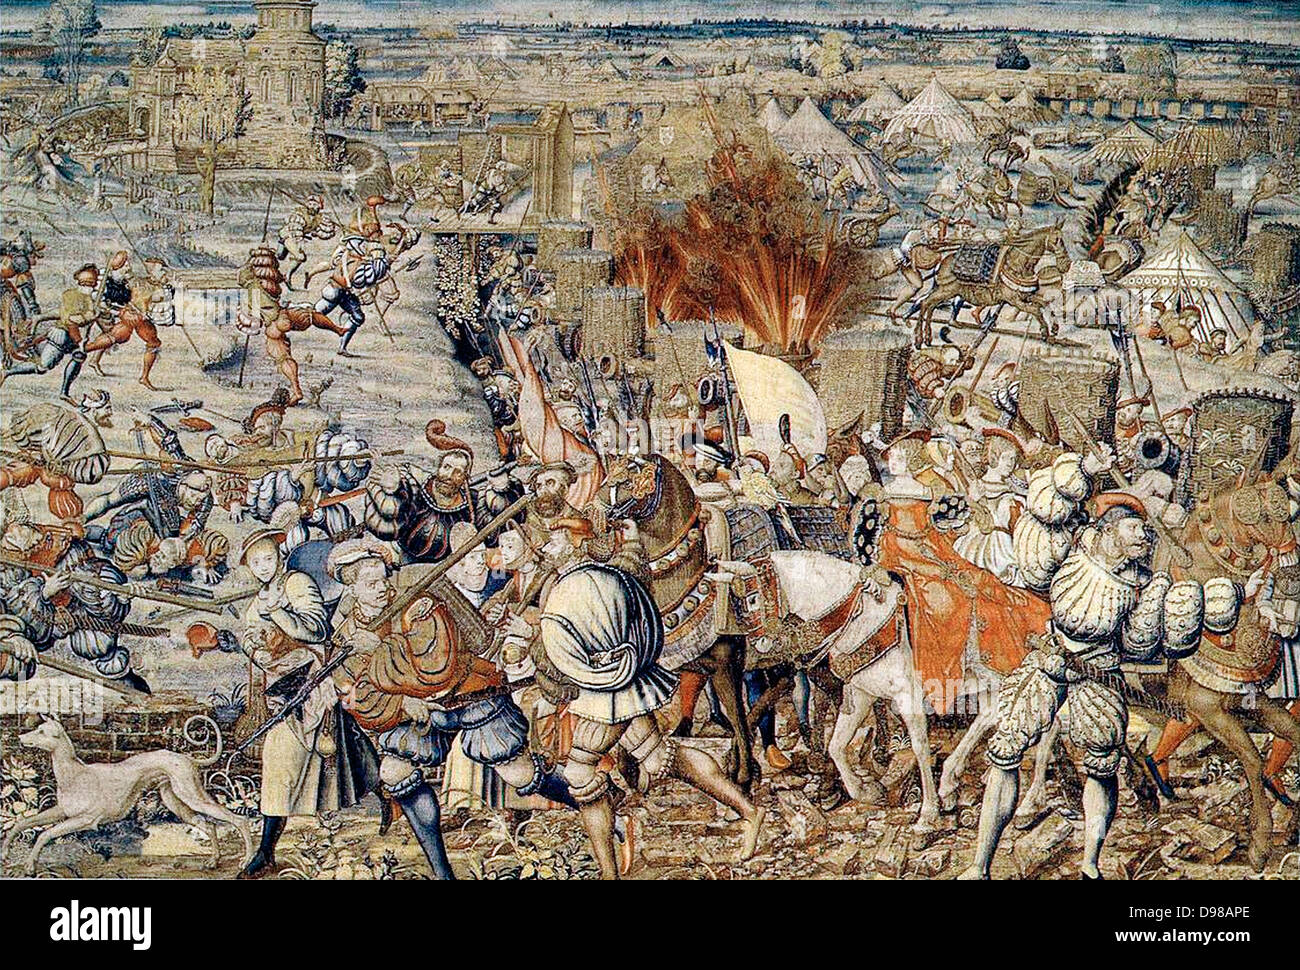 La battaglia di Pavia, 24 febbraio 1525, fu il decisivo l'impegno italiano della guerra del 1521-25. Un Spanish-Imperial esercito sotto il comando di Charles de Lannoy attaccato l'esercito francese sotto il comando di personale di Francesco I di Francia. L'esercito francese era stato sconfitto. Lo stesso Francesco, catturati dalle truppe spagnole è stato imprigionato da Carlo V e costretto a firmare il trattato umiliante di Madrid, con la cessione del territorio significativo al suo captor. Foto Stock